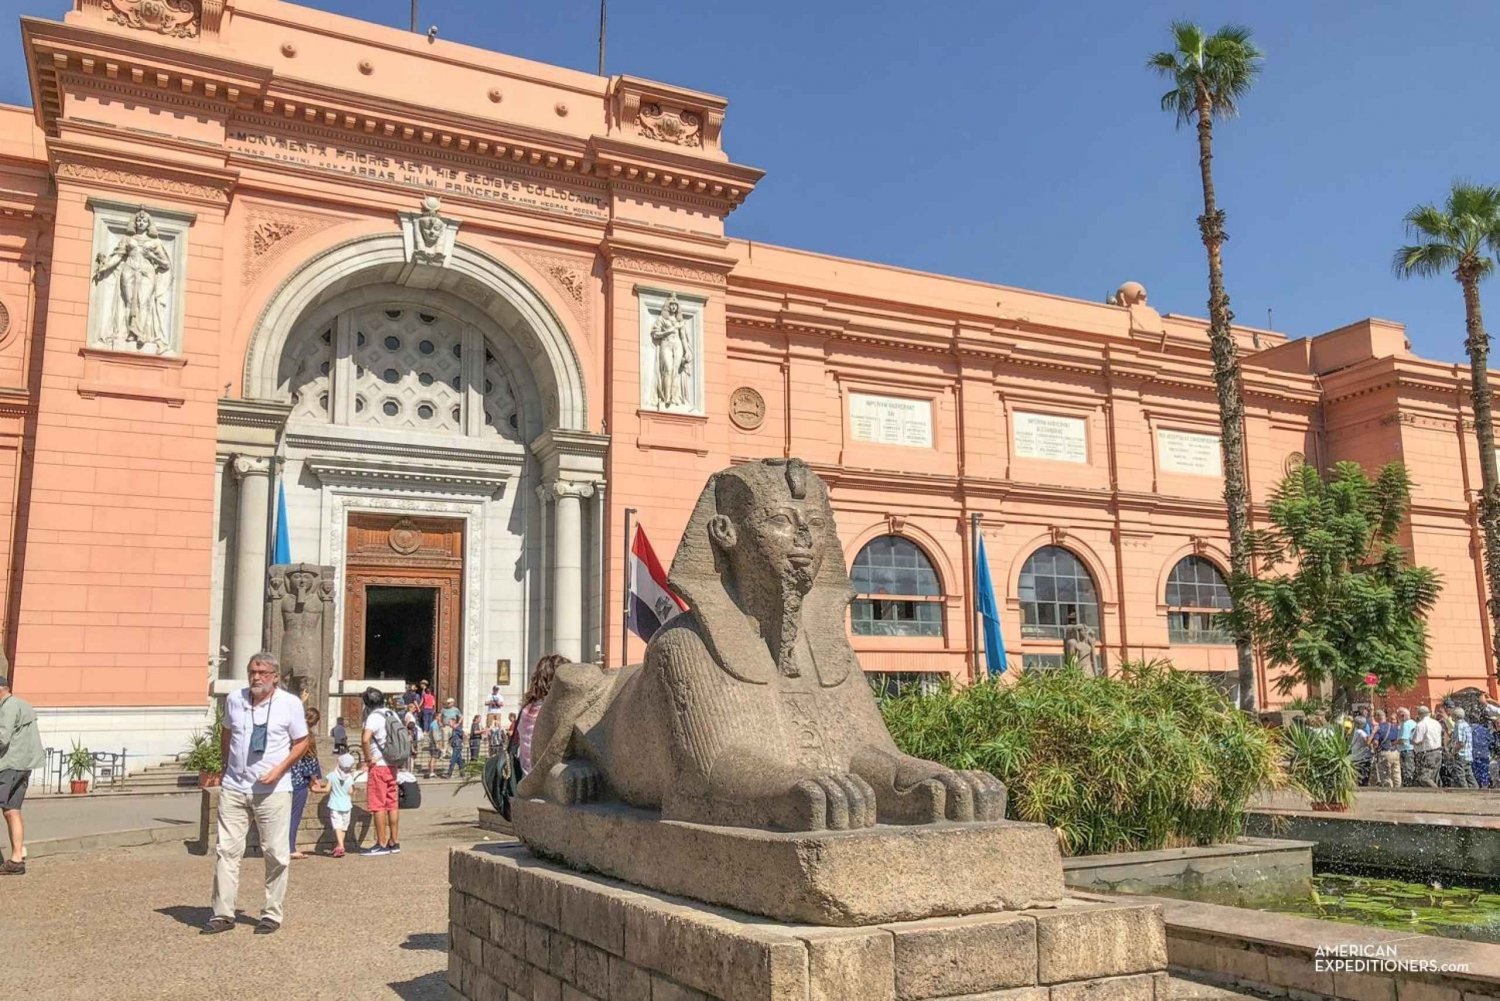 Pacchetto viaggio al Cairo per 4 giorni e 3 notti